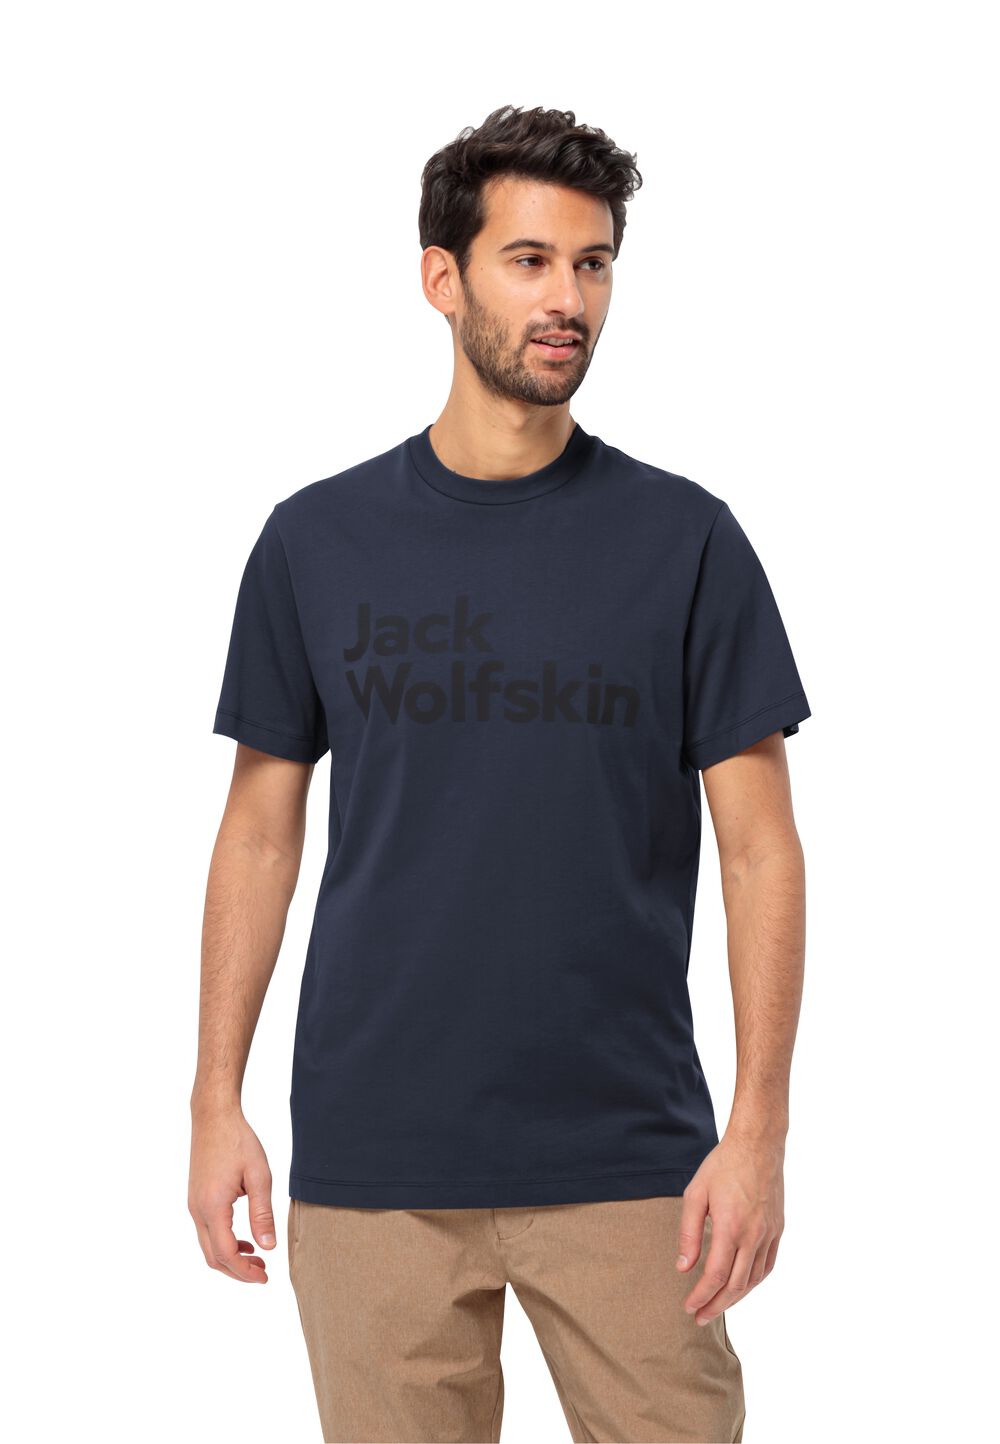 Jack Wolfskin T-Shirt aus Bio-Baumwolle Herren Essential Logo T-Shirt Men XL blau night blue von Jack Wolfskin